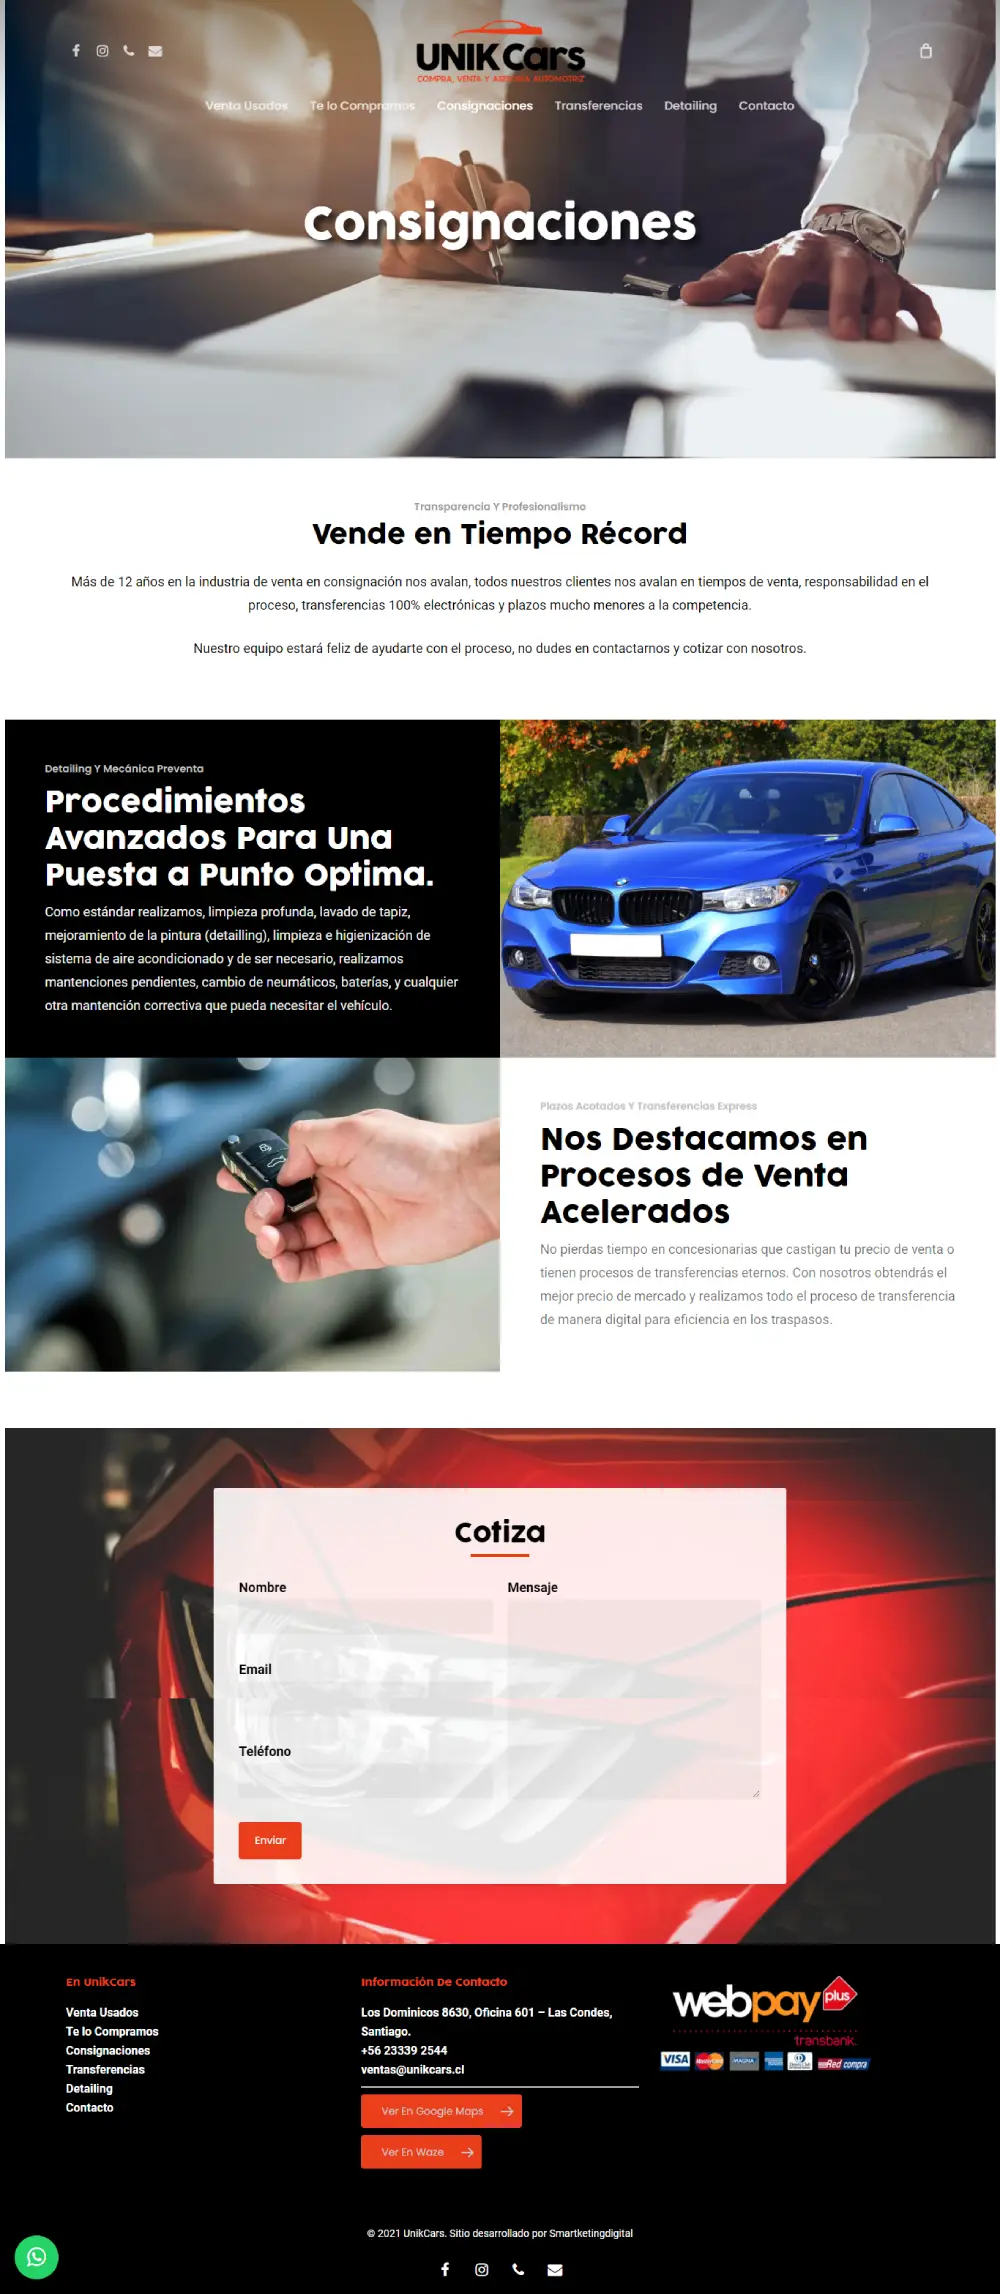 Unikcars - sitio desarrollado por Risi y Smartketing